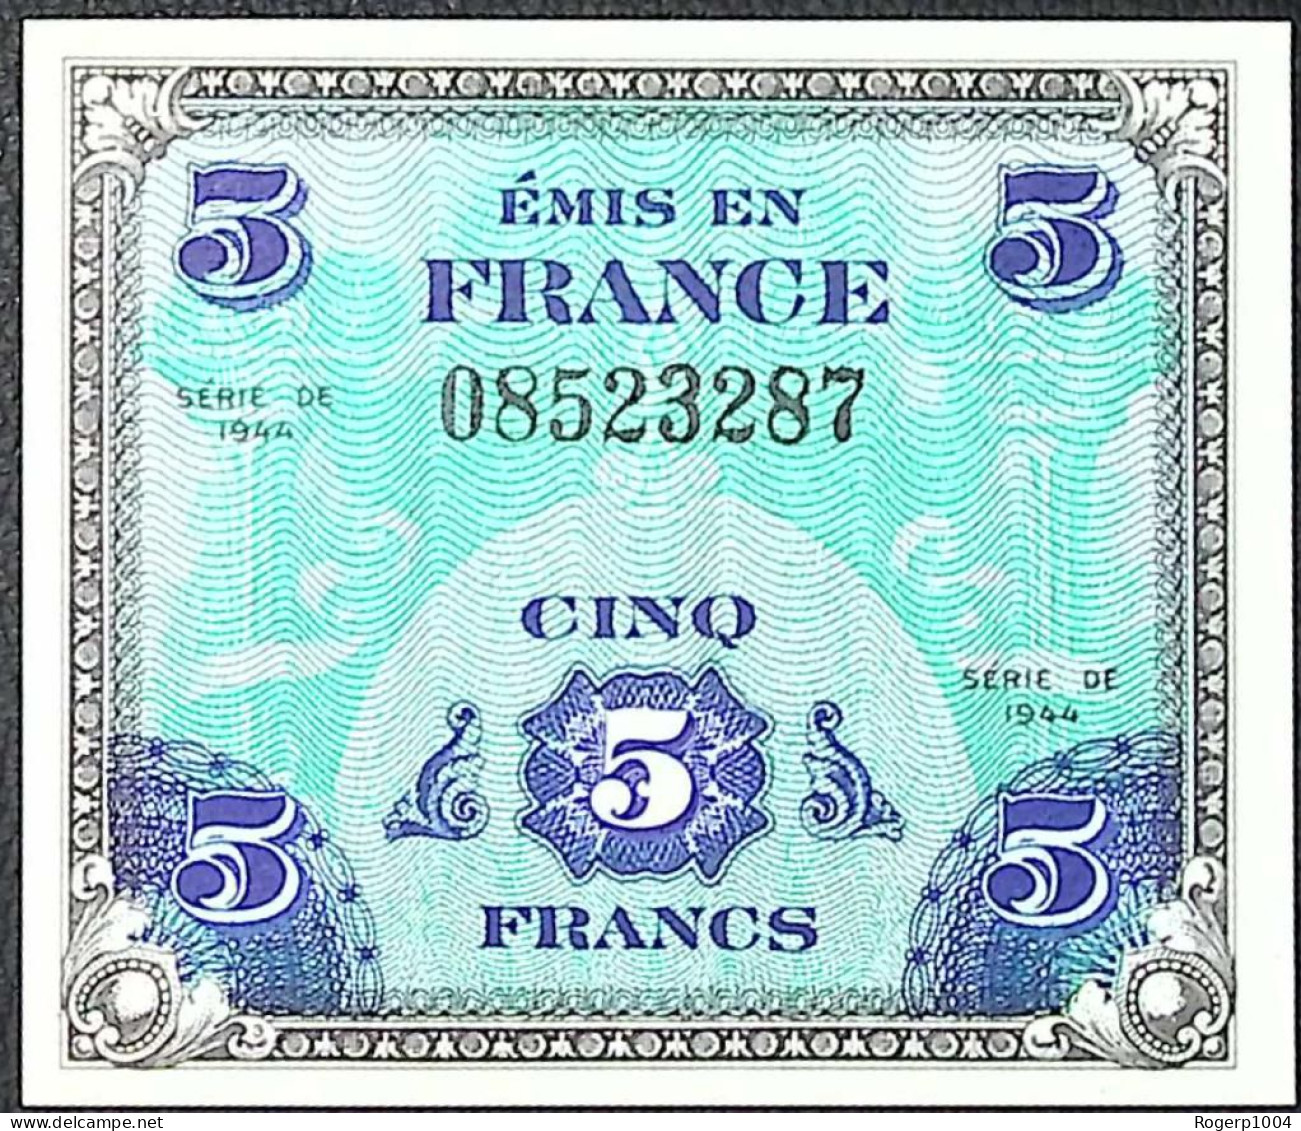 FRANCE * Billets Du Trésor * 5 Francs Drapeau * 1944 * Sans Série * Etat/Grade NEUF/UNC - 1944 Drapeau/Francia